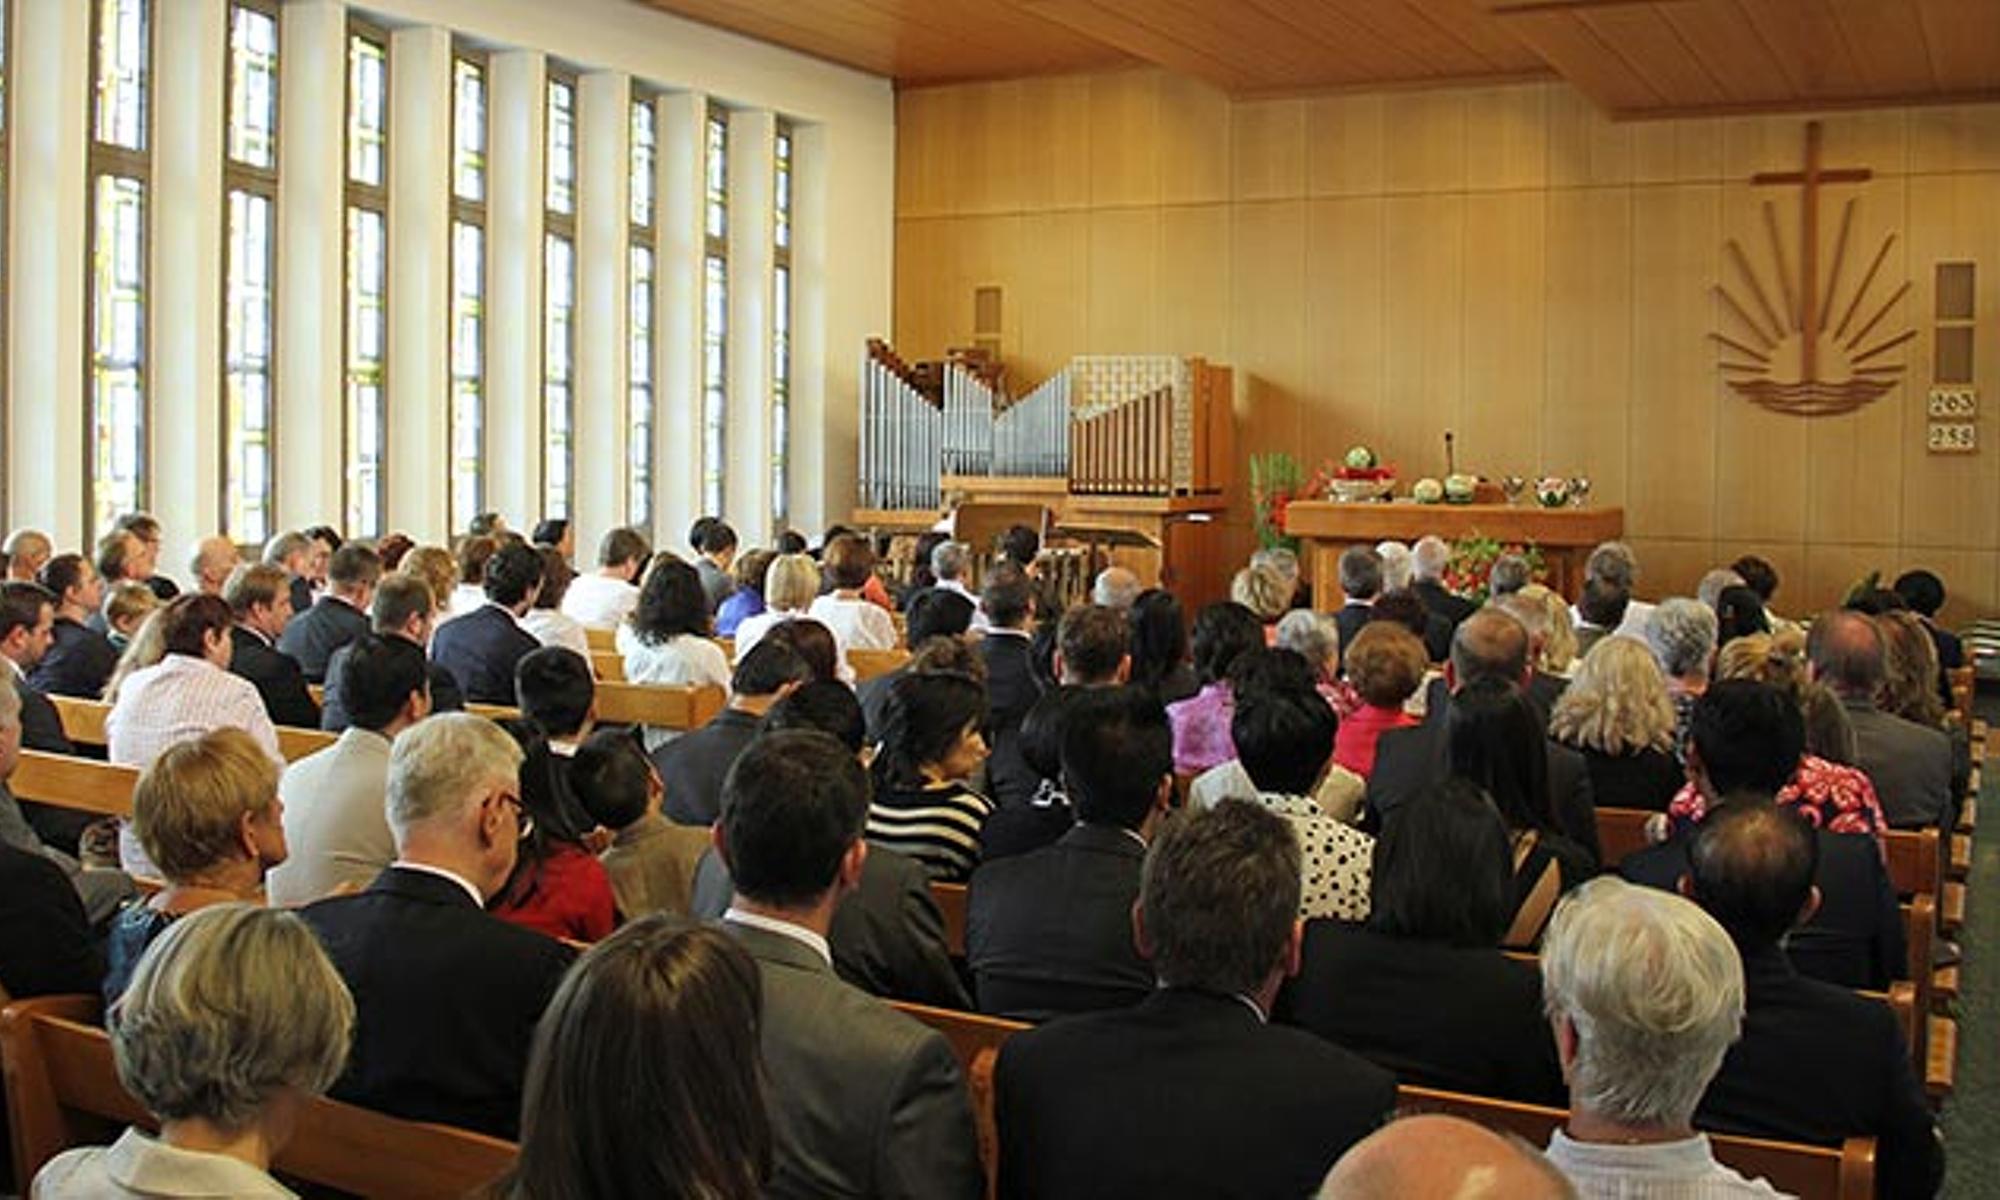 Viele, auch ehemalige, Gemeindemitglieder waren zum Festgottesdienst gekommen